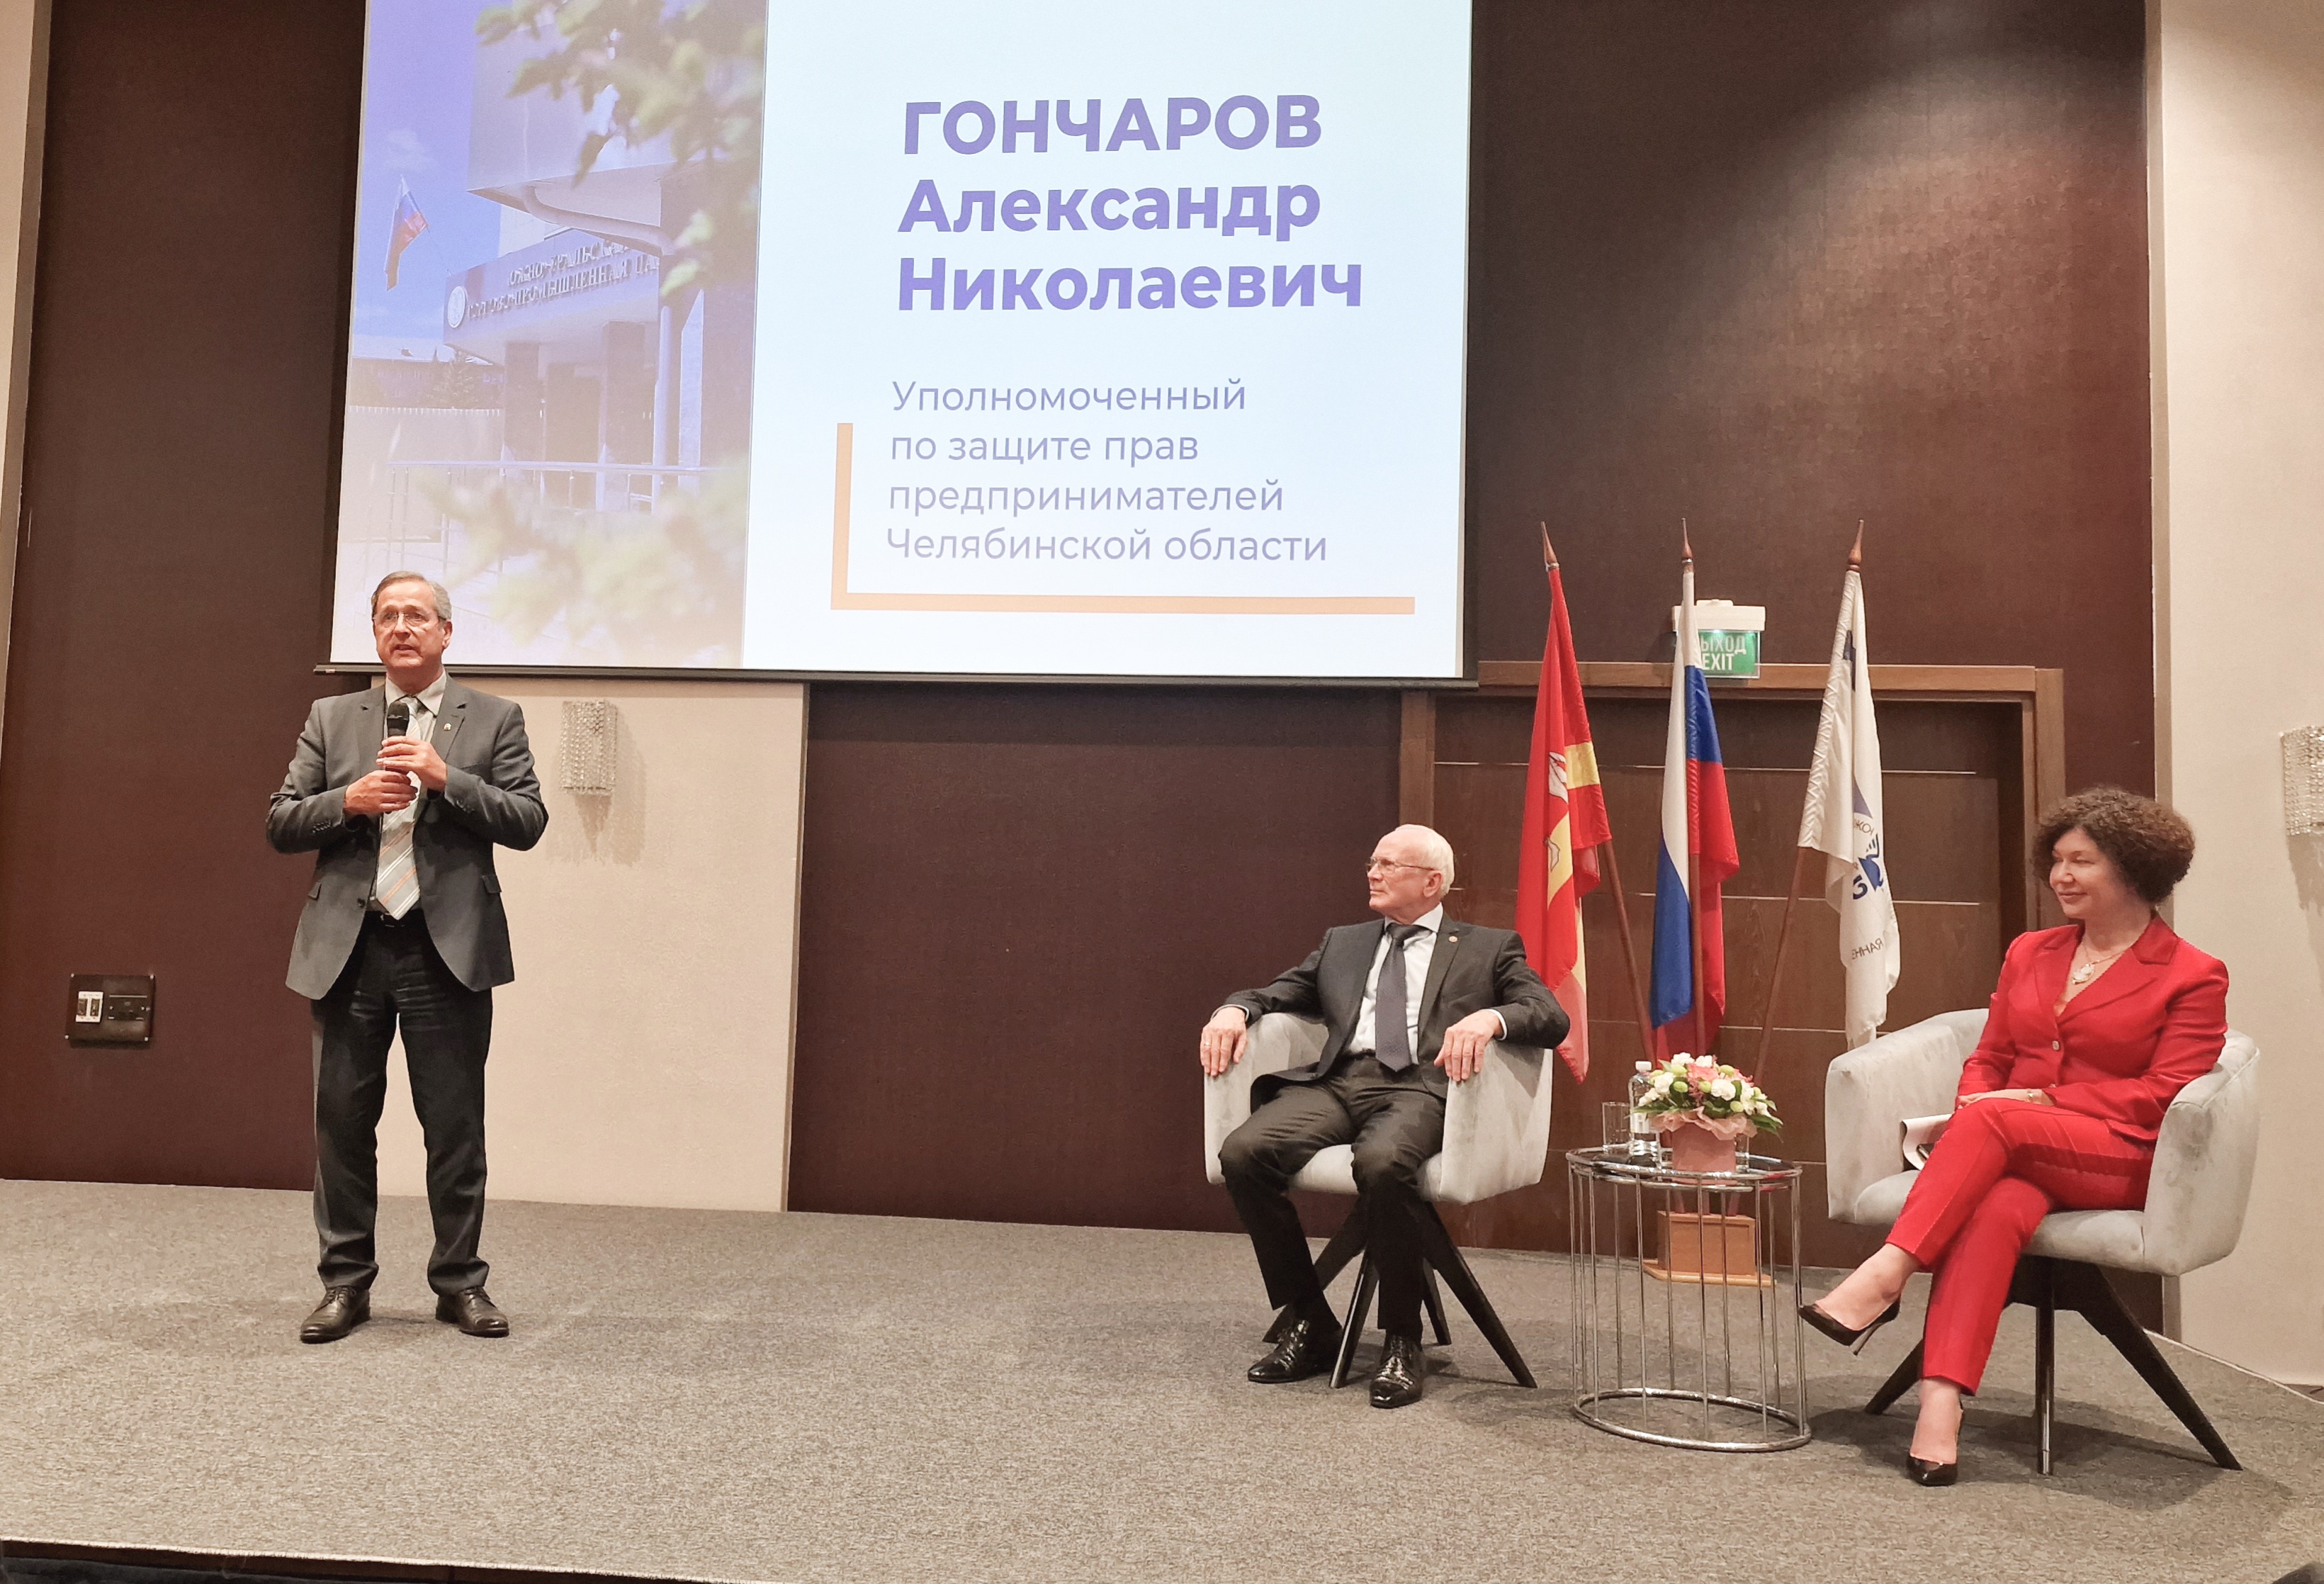 фото: Уполномоченный по защите прав предпринимателей в Челябинской области принял участие в Дне открытых дверей ЮУТПП